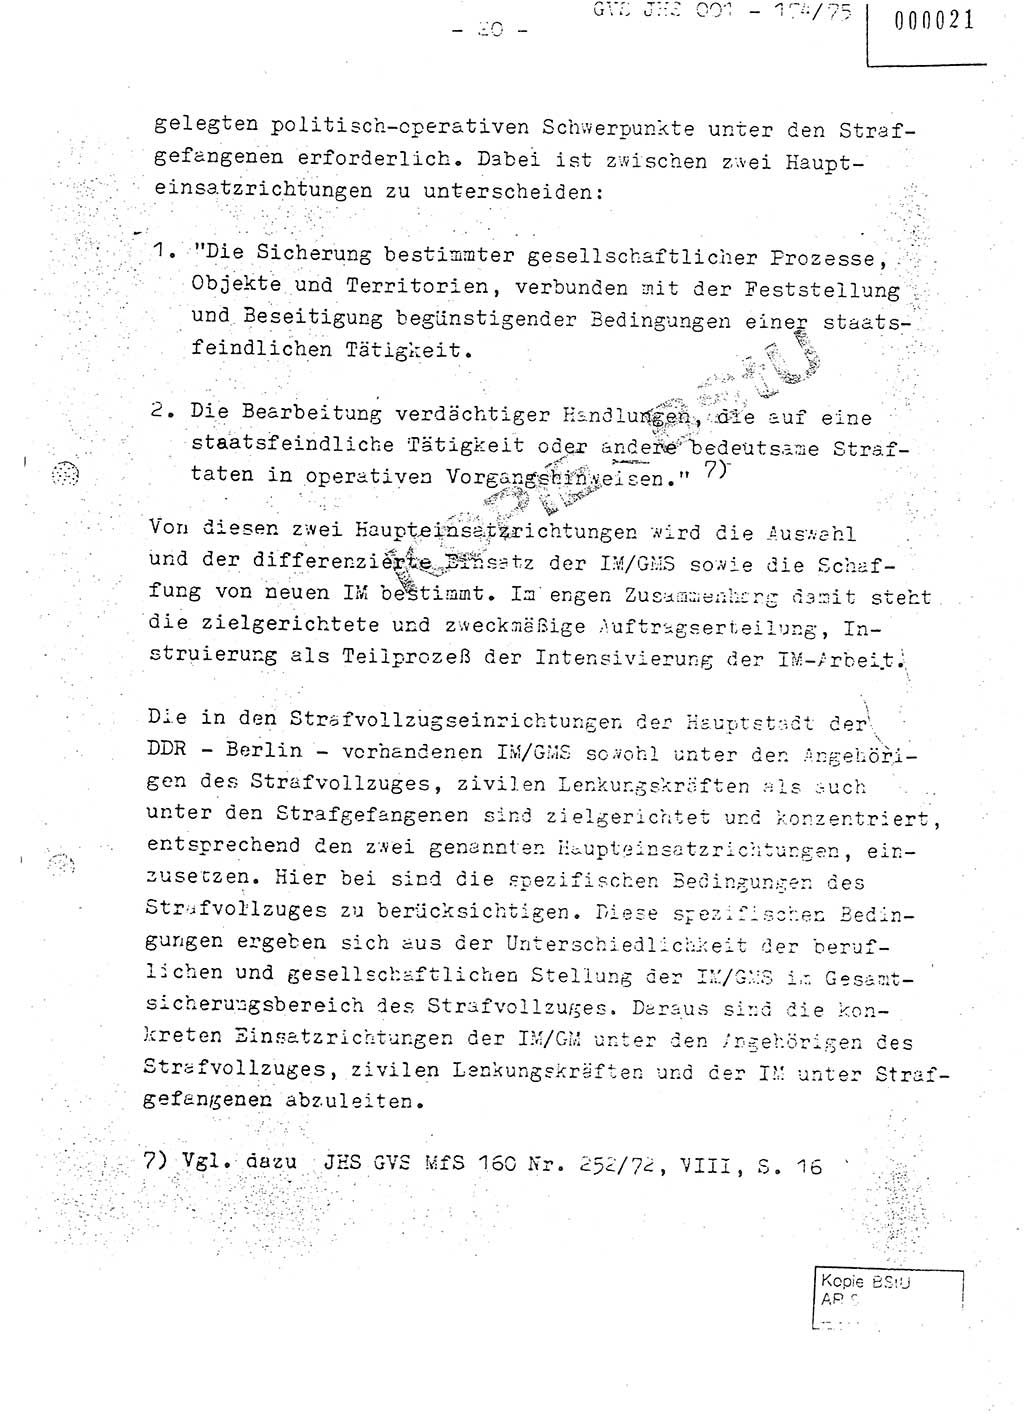 Fachschulabschlußarbeit Oberleutnant Adolf Cichon (Abt. Ⅶ), Ministerium für Staatssicherheit (MfS) [Deutsche Demokratische Republik (DDR)], Juristische Hochschule (JHS), Geheime Verschlußsache (GVS) 001-174/75, Potsdam 1976, Seite 20 (FS-Abschl.-Arb. MfS DDR JHS GVS 001-174/75 1976, S. 20)